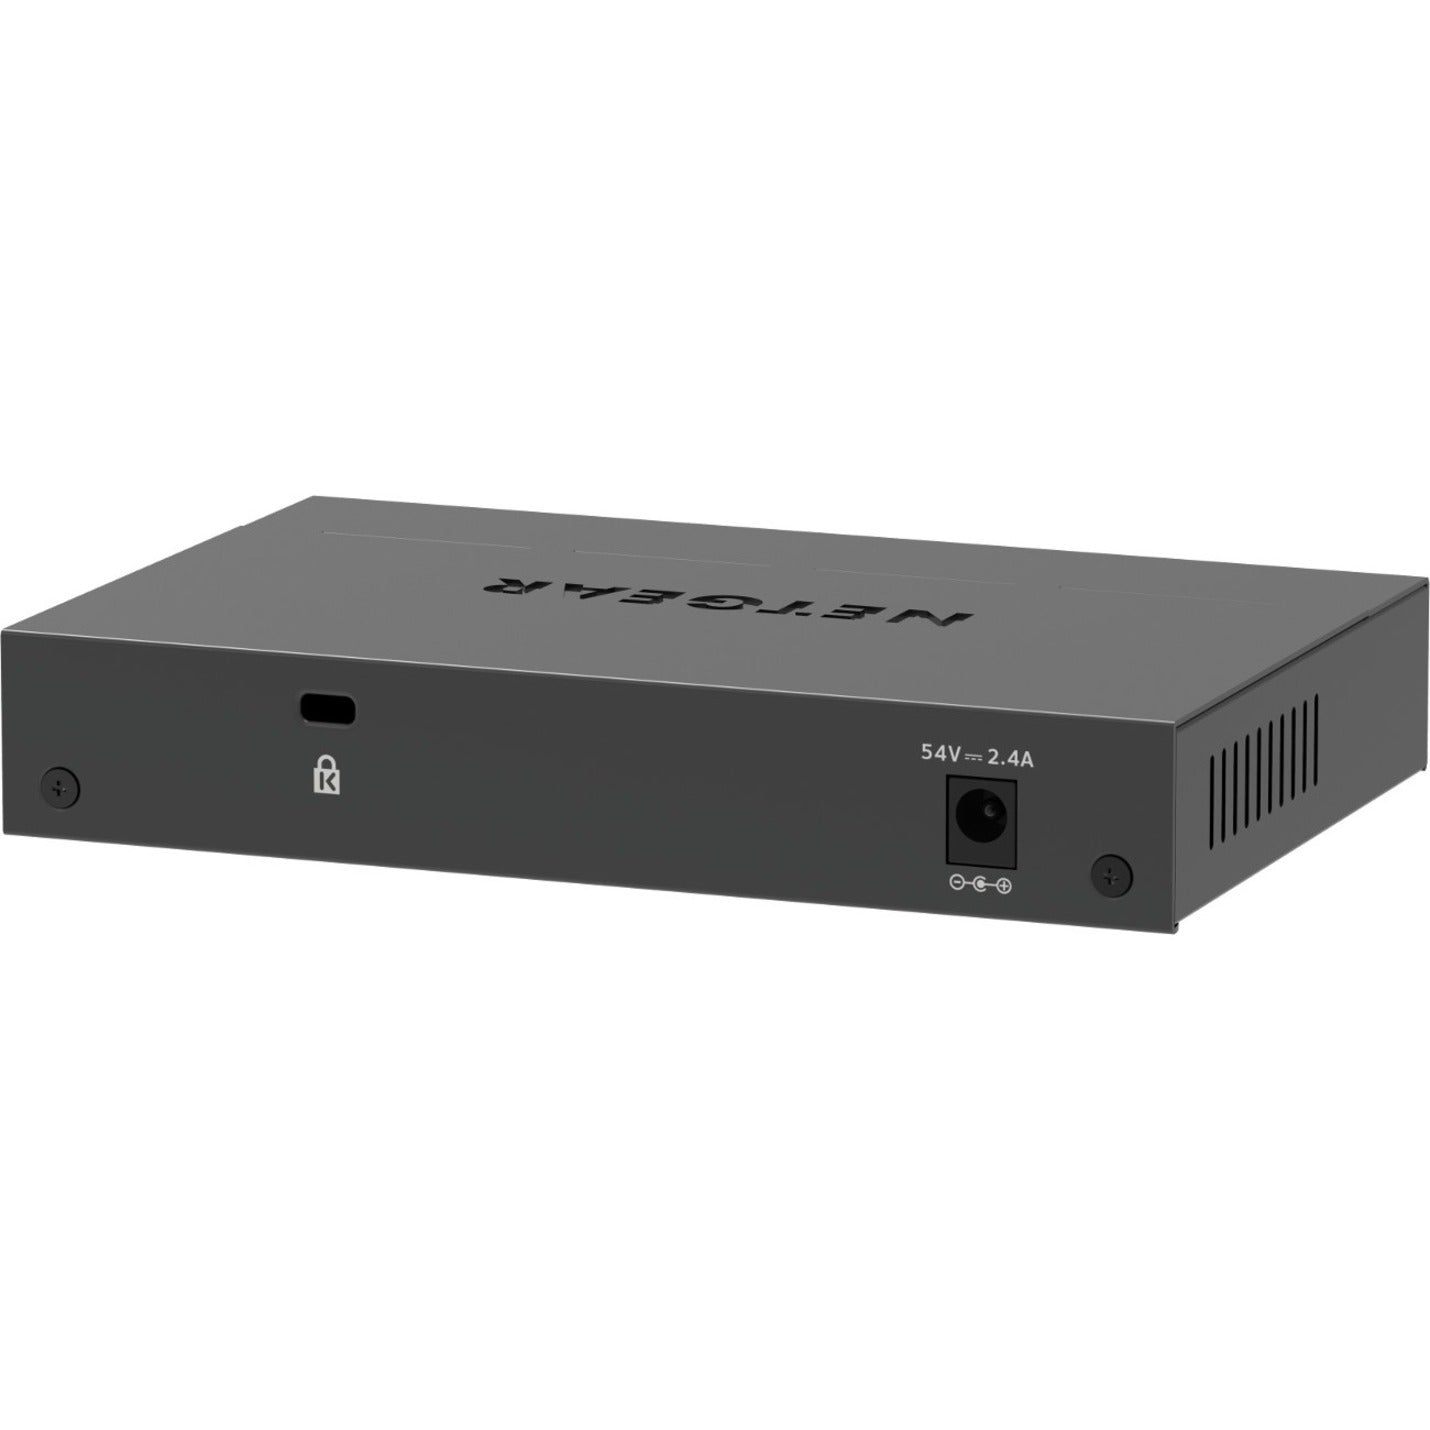 Netgear GS305EPP Ethernet Switch (GS305EPP-100NAS)